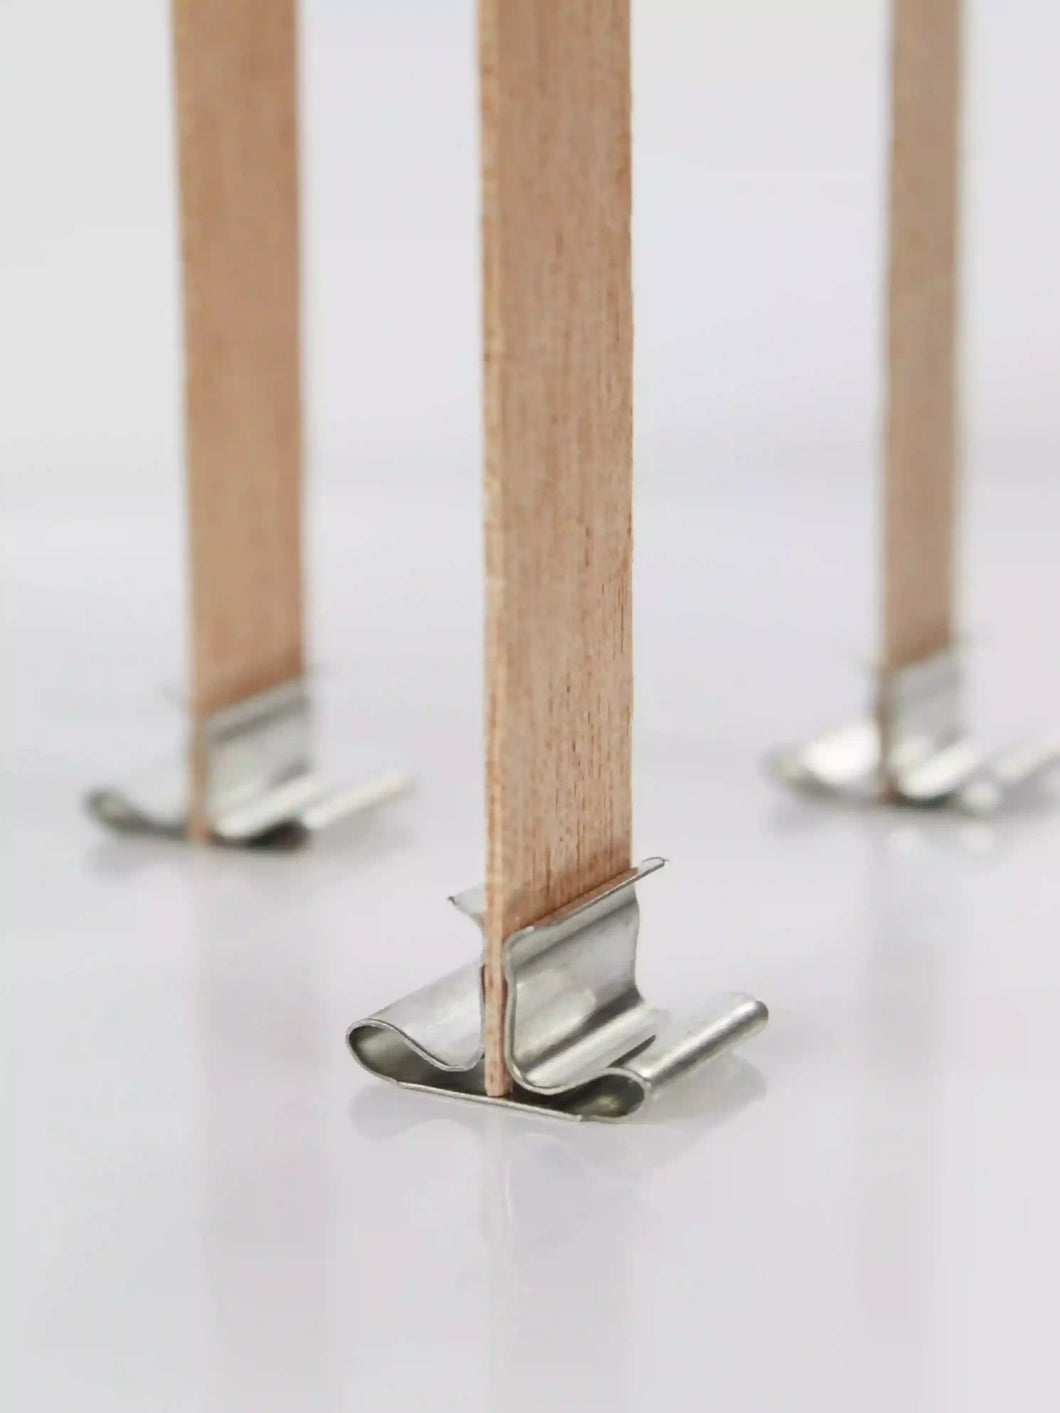 Pabilos o mechas de madera natural de larga duración con soportes incluidos. Características: (10 pcs /set) incluye soportes de hierro. Medidas: 130 x 13 mm